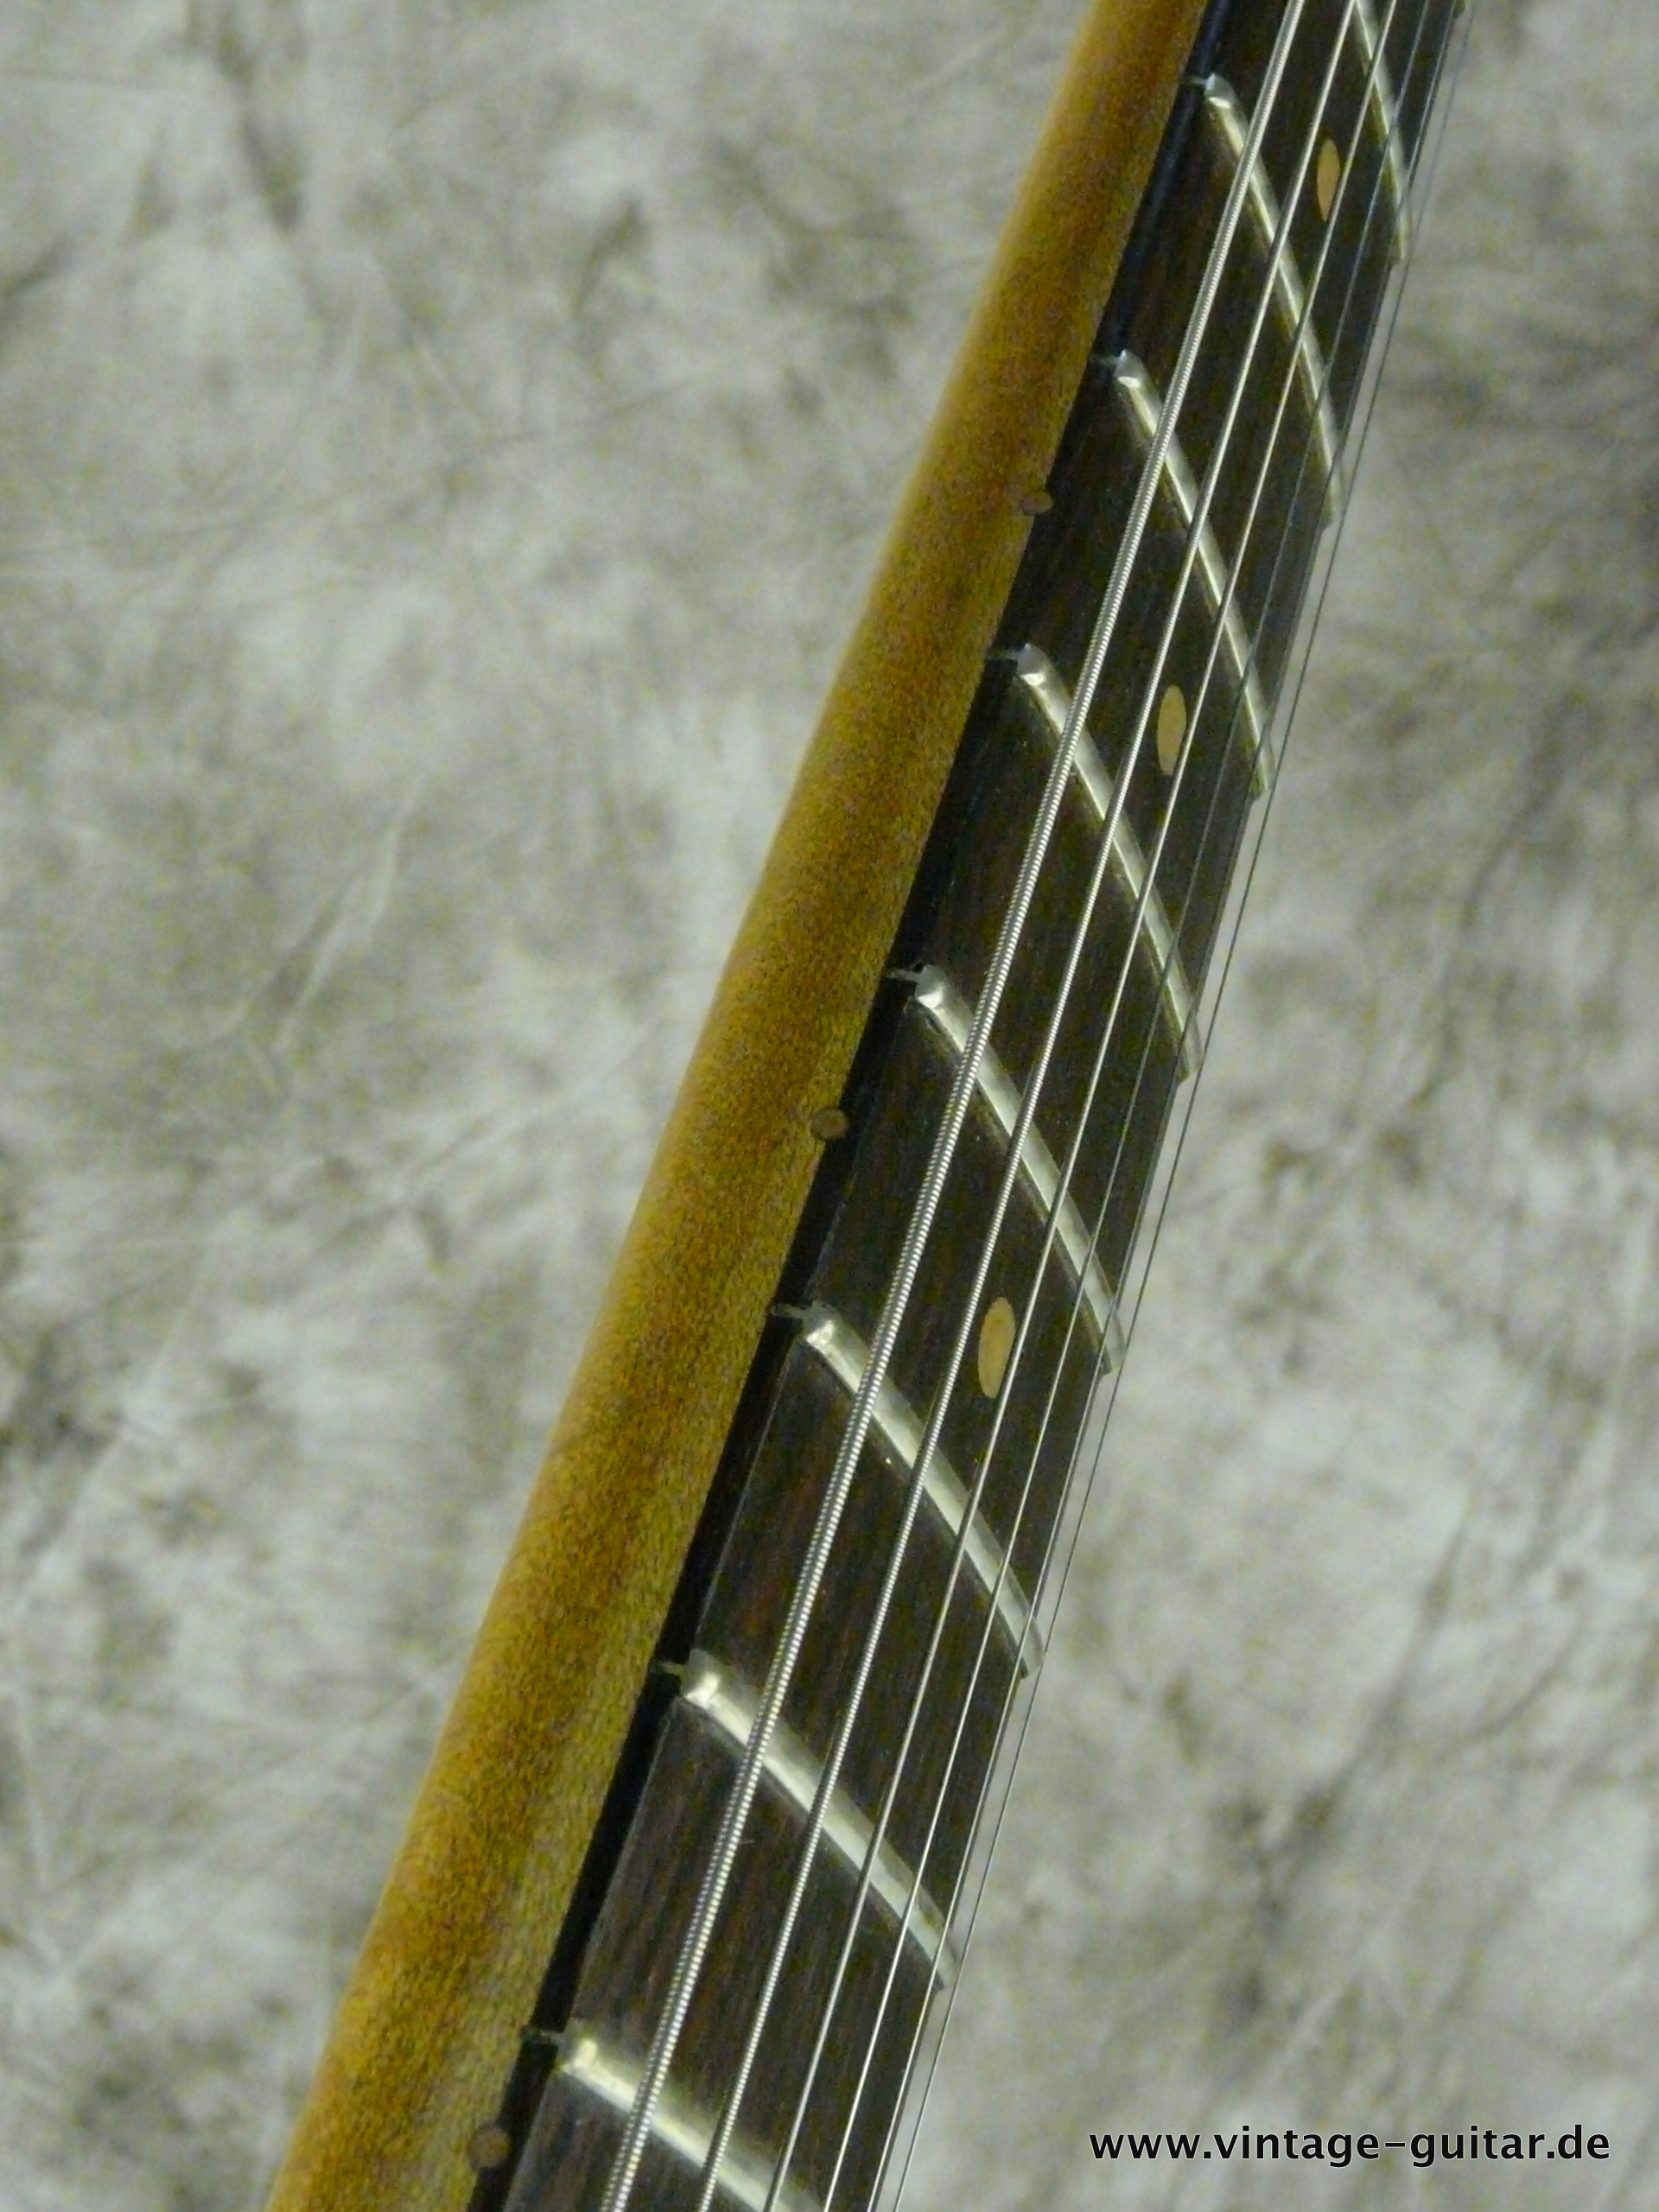 Fender-Jazzmaster-1964-refinished-fiesta-red-009.JPG